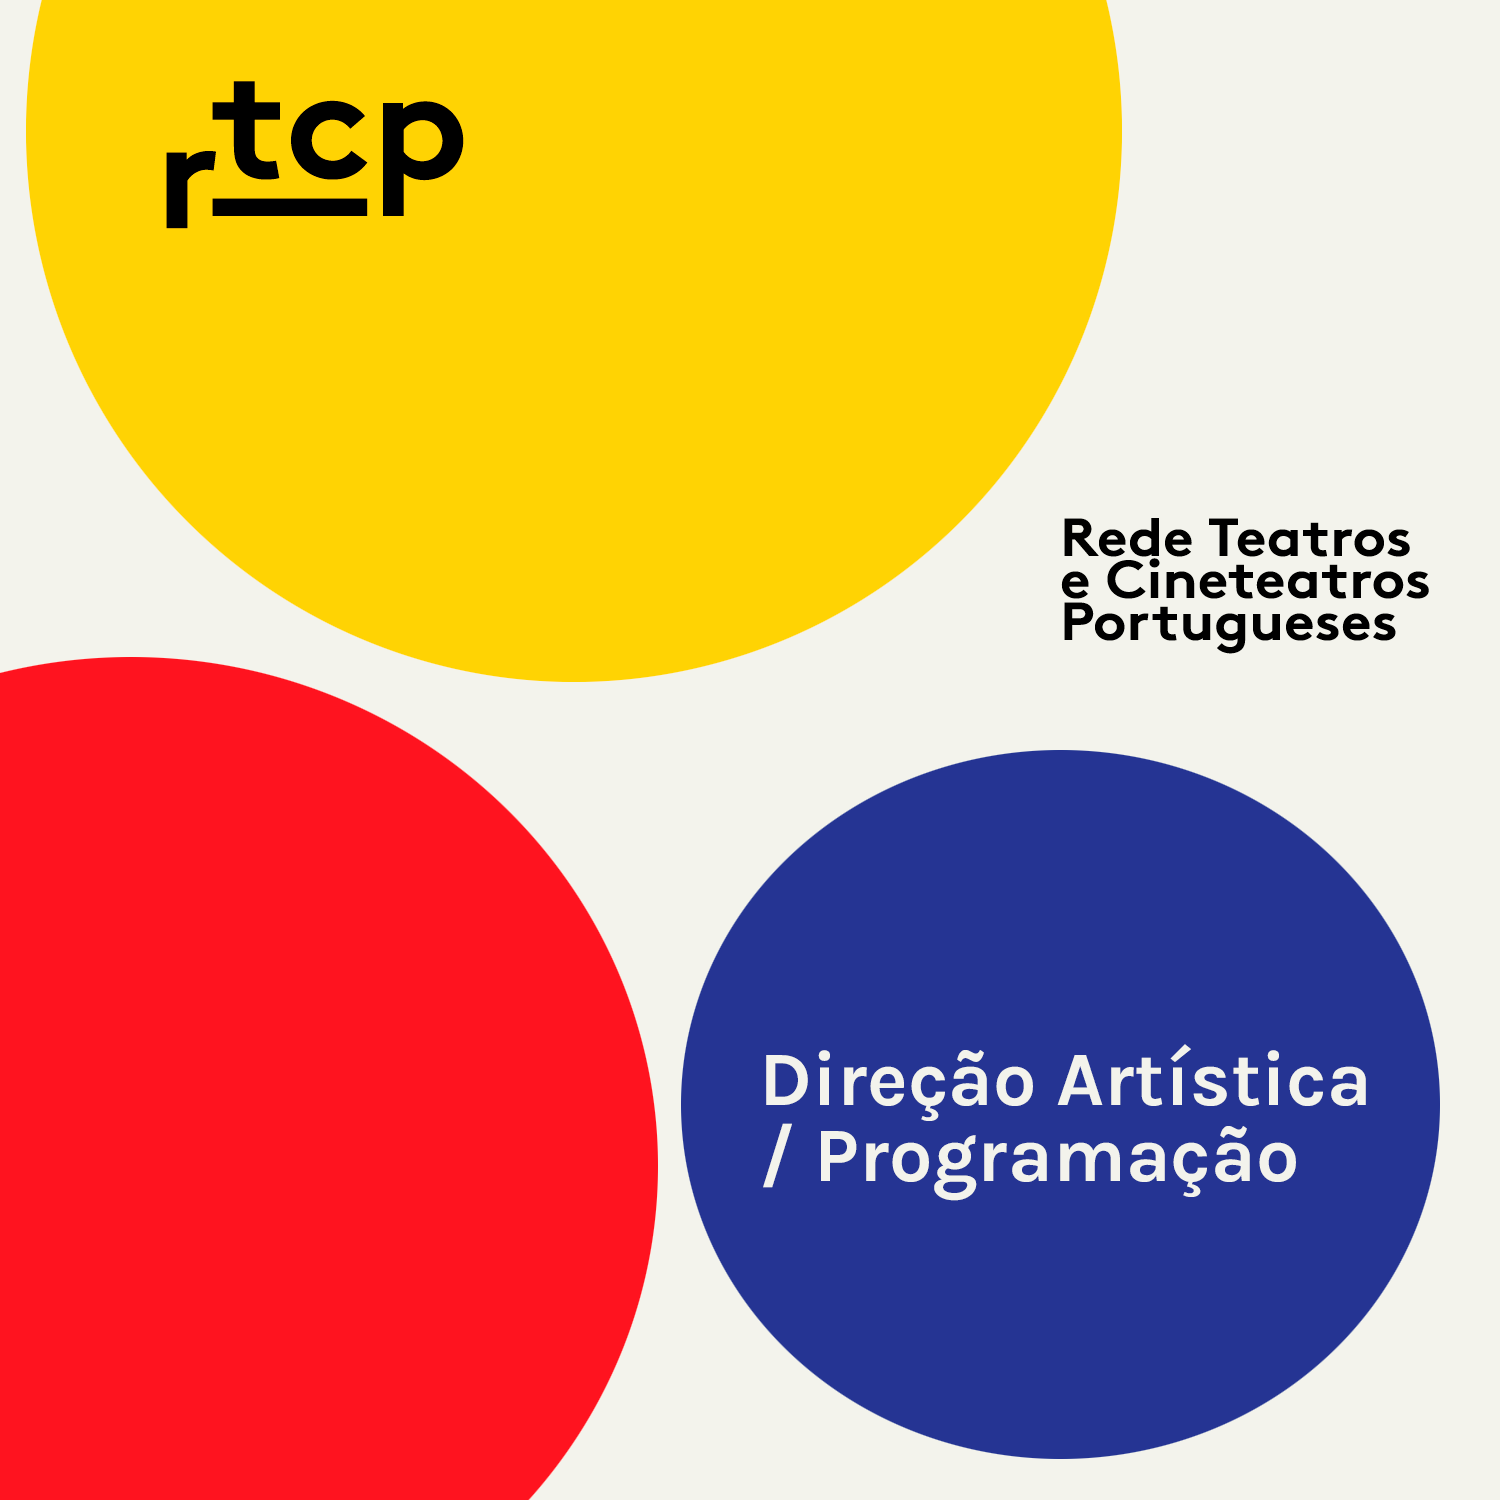  Lista de Diretores artsticos / Programadores da Rede de Teatros e Cineteatros Portugueses